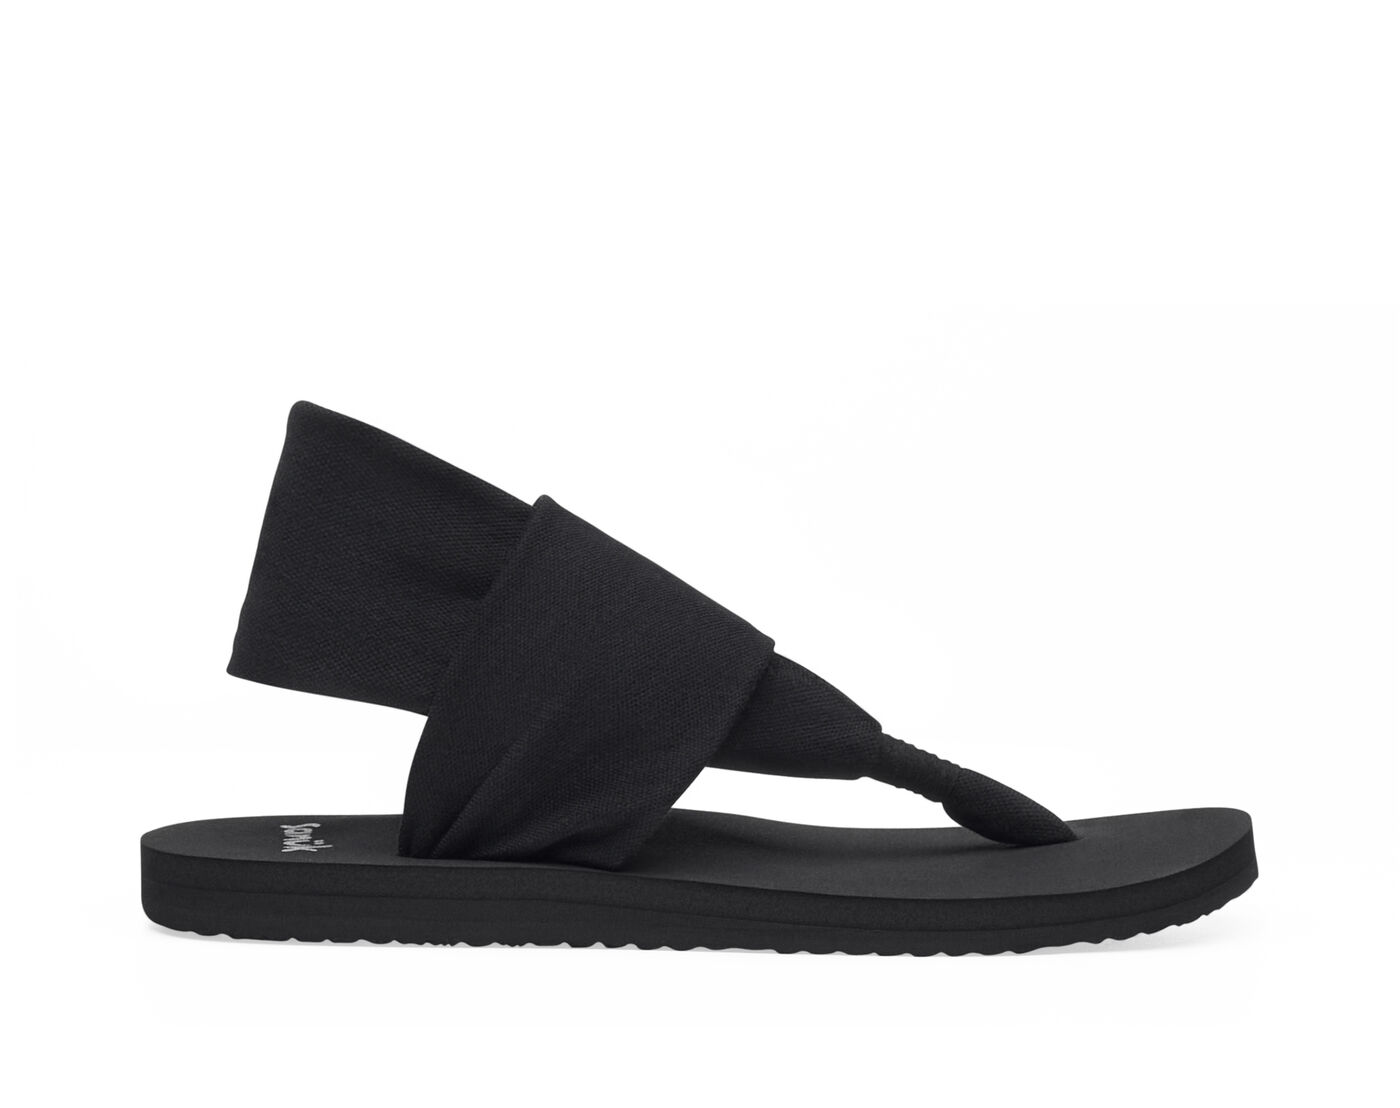 Sanuk Yoga Sling Sandals Black Size 8 - $15 - From Mackenzie